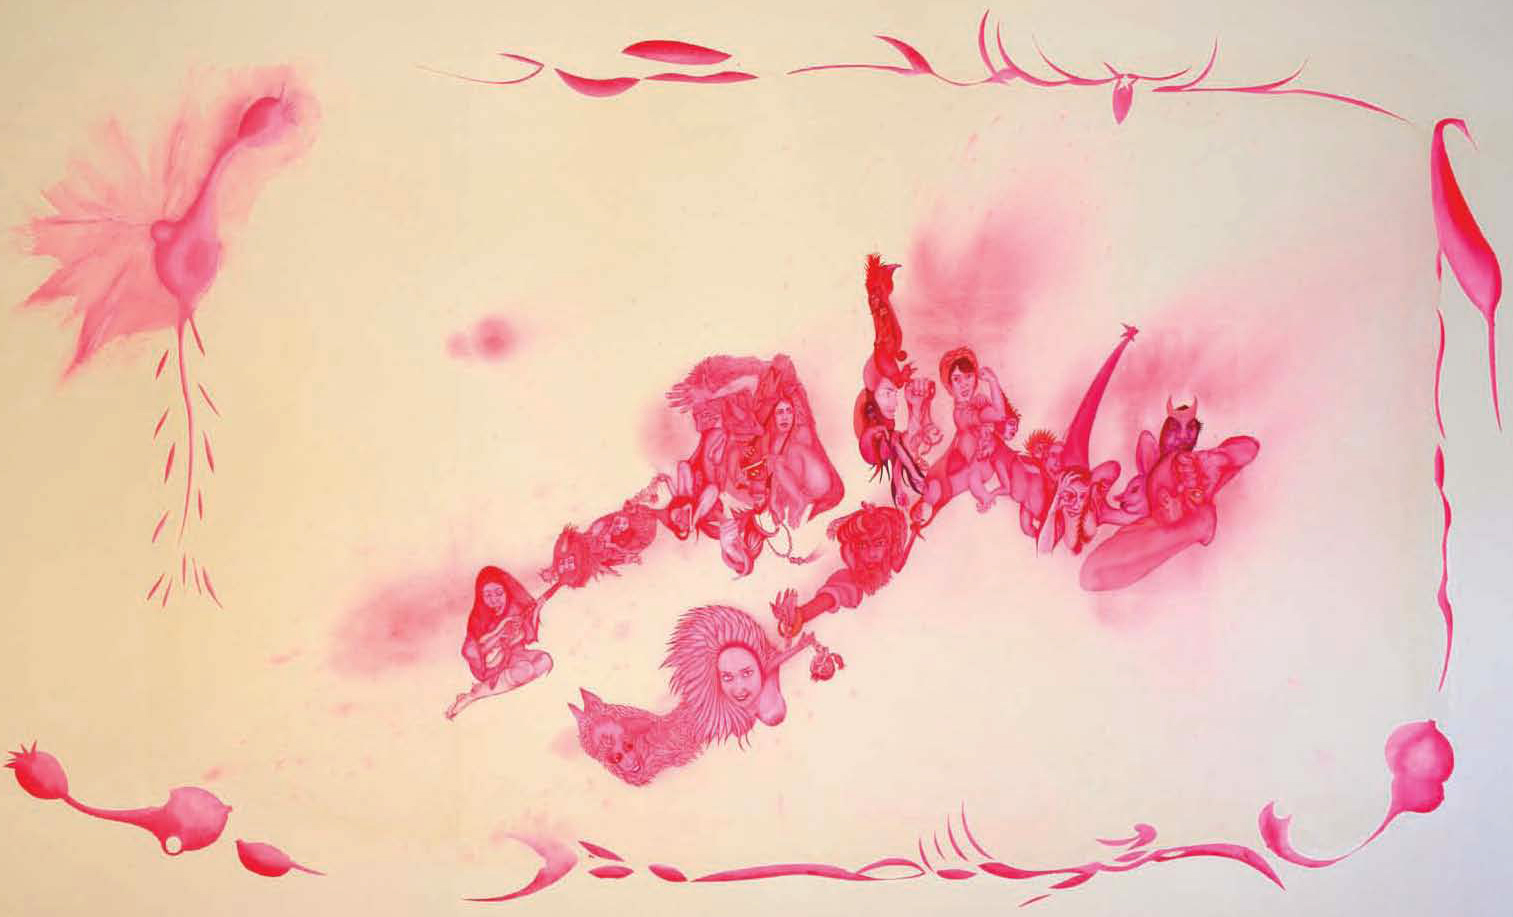 Rosa, 2012, Acrylic on Canvas, 160 x 250 cm.